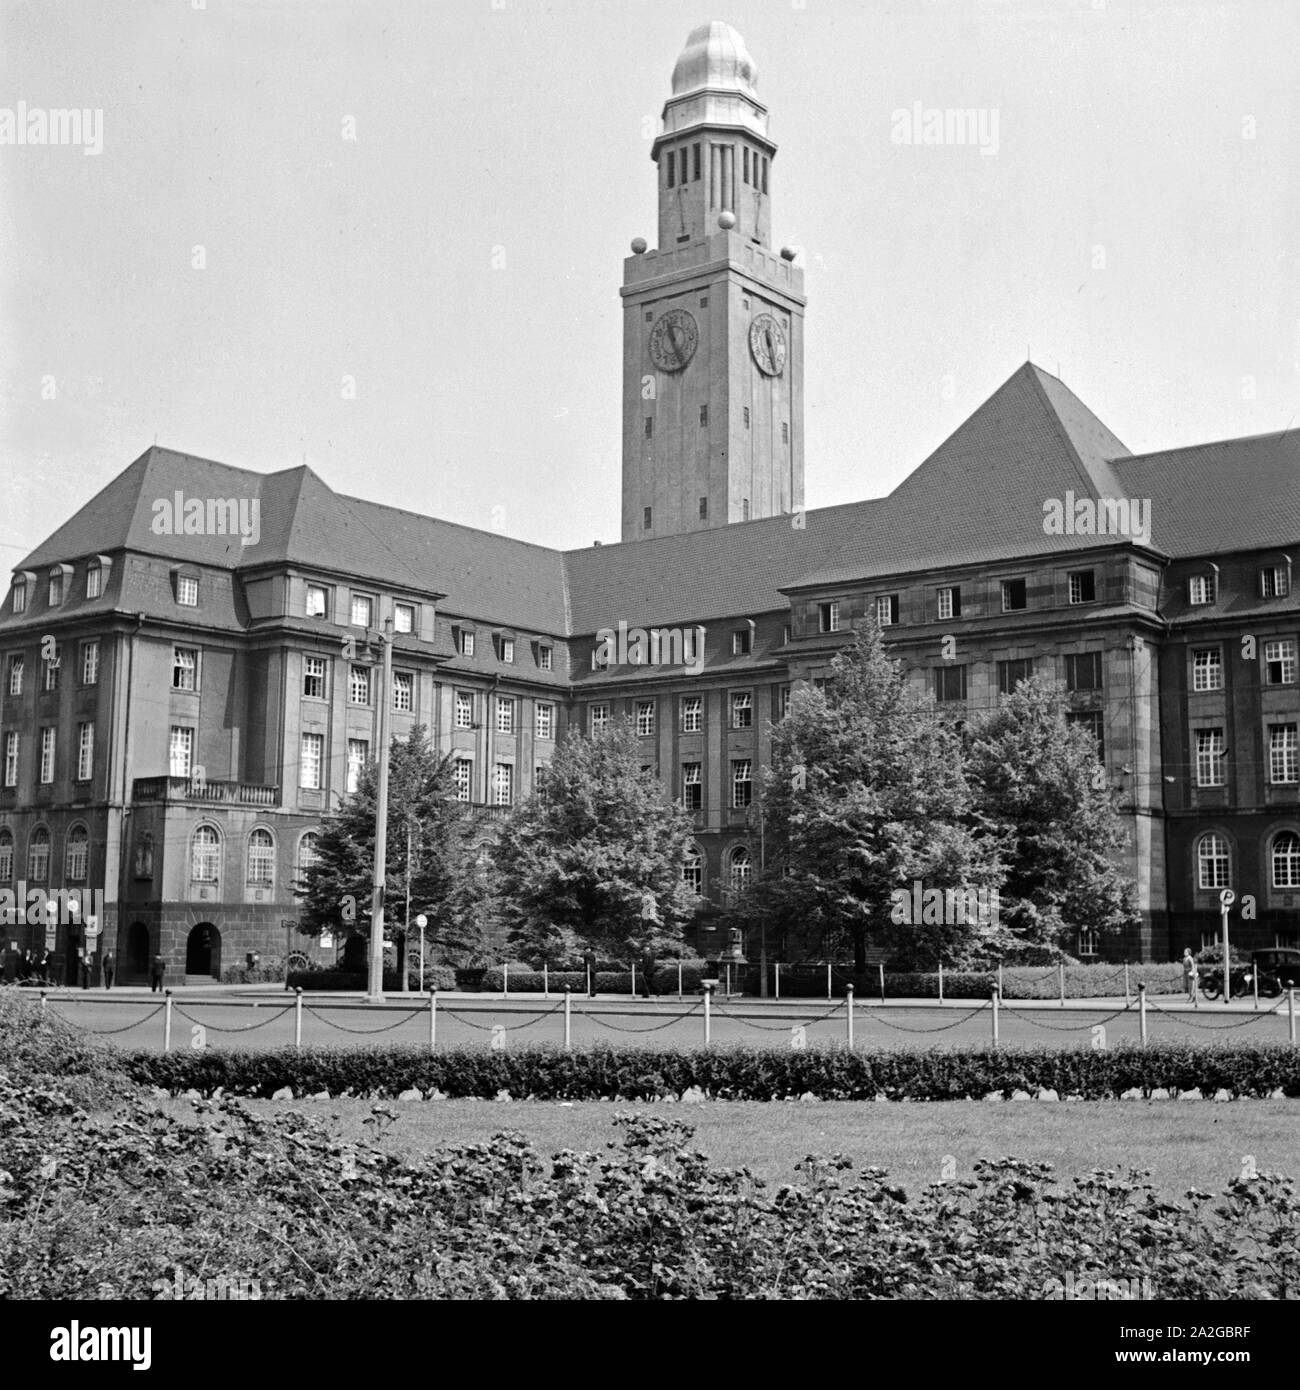 Das Rathaus in Gelsenkirchen Buer, Deutschland 1930er Jahre. Gelsenkirchen Buer city hall, Germany 1930s. Stock Photo